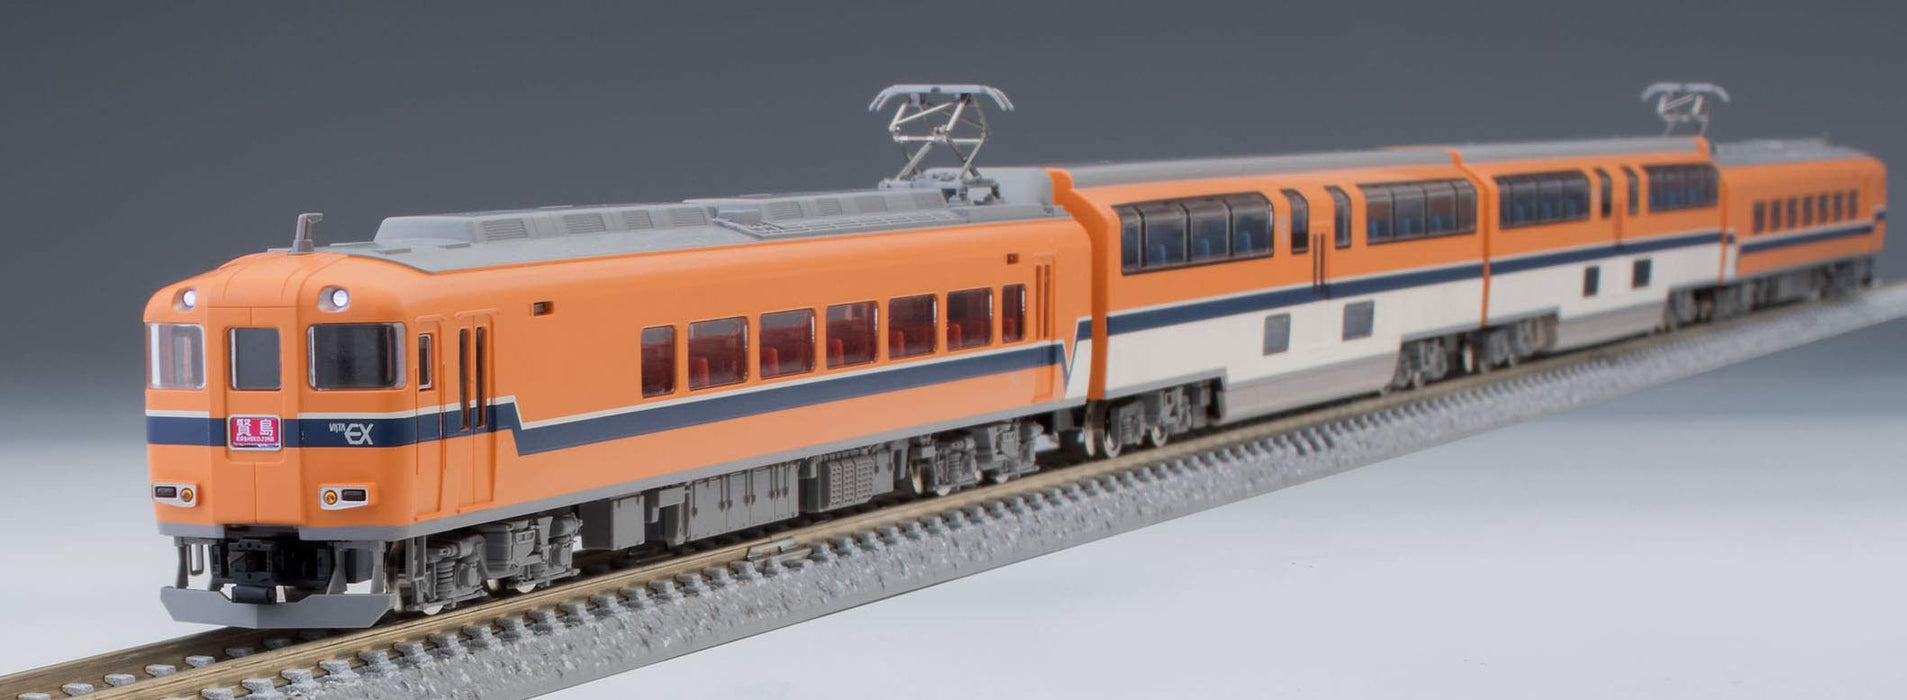 Tomytec Tomix N Spur Kintetsu Typ 30000 4-Wagen-Zugset mit Raucherzimmer 98330 Eisenbahnmodell